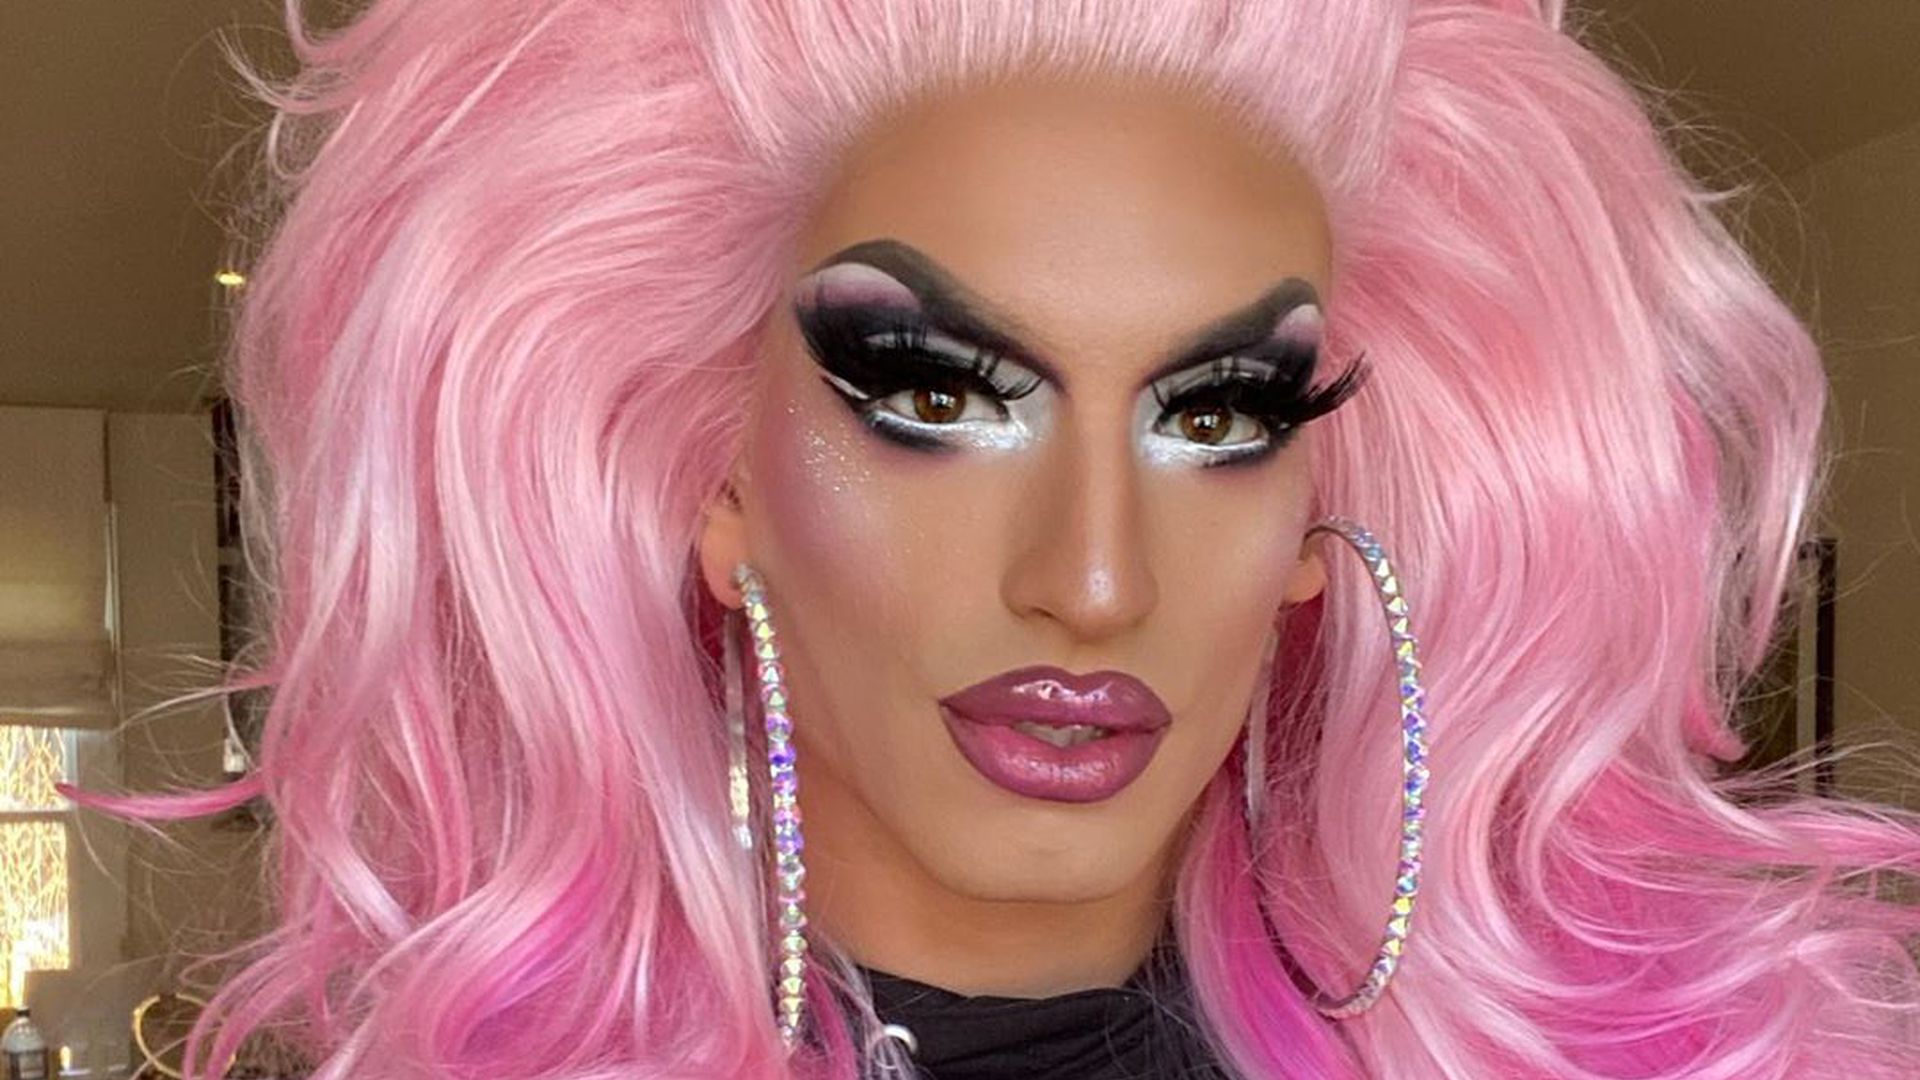 drag-queen-katy-baehm-macht-ein-selfie-von-sich-mit-pinker-peruecke.jpg